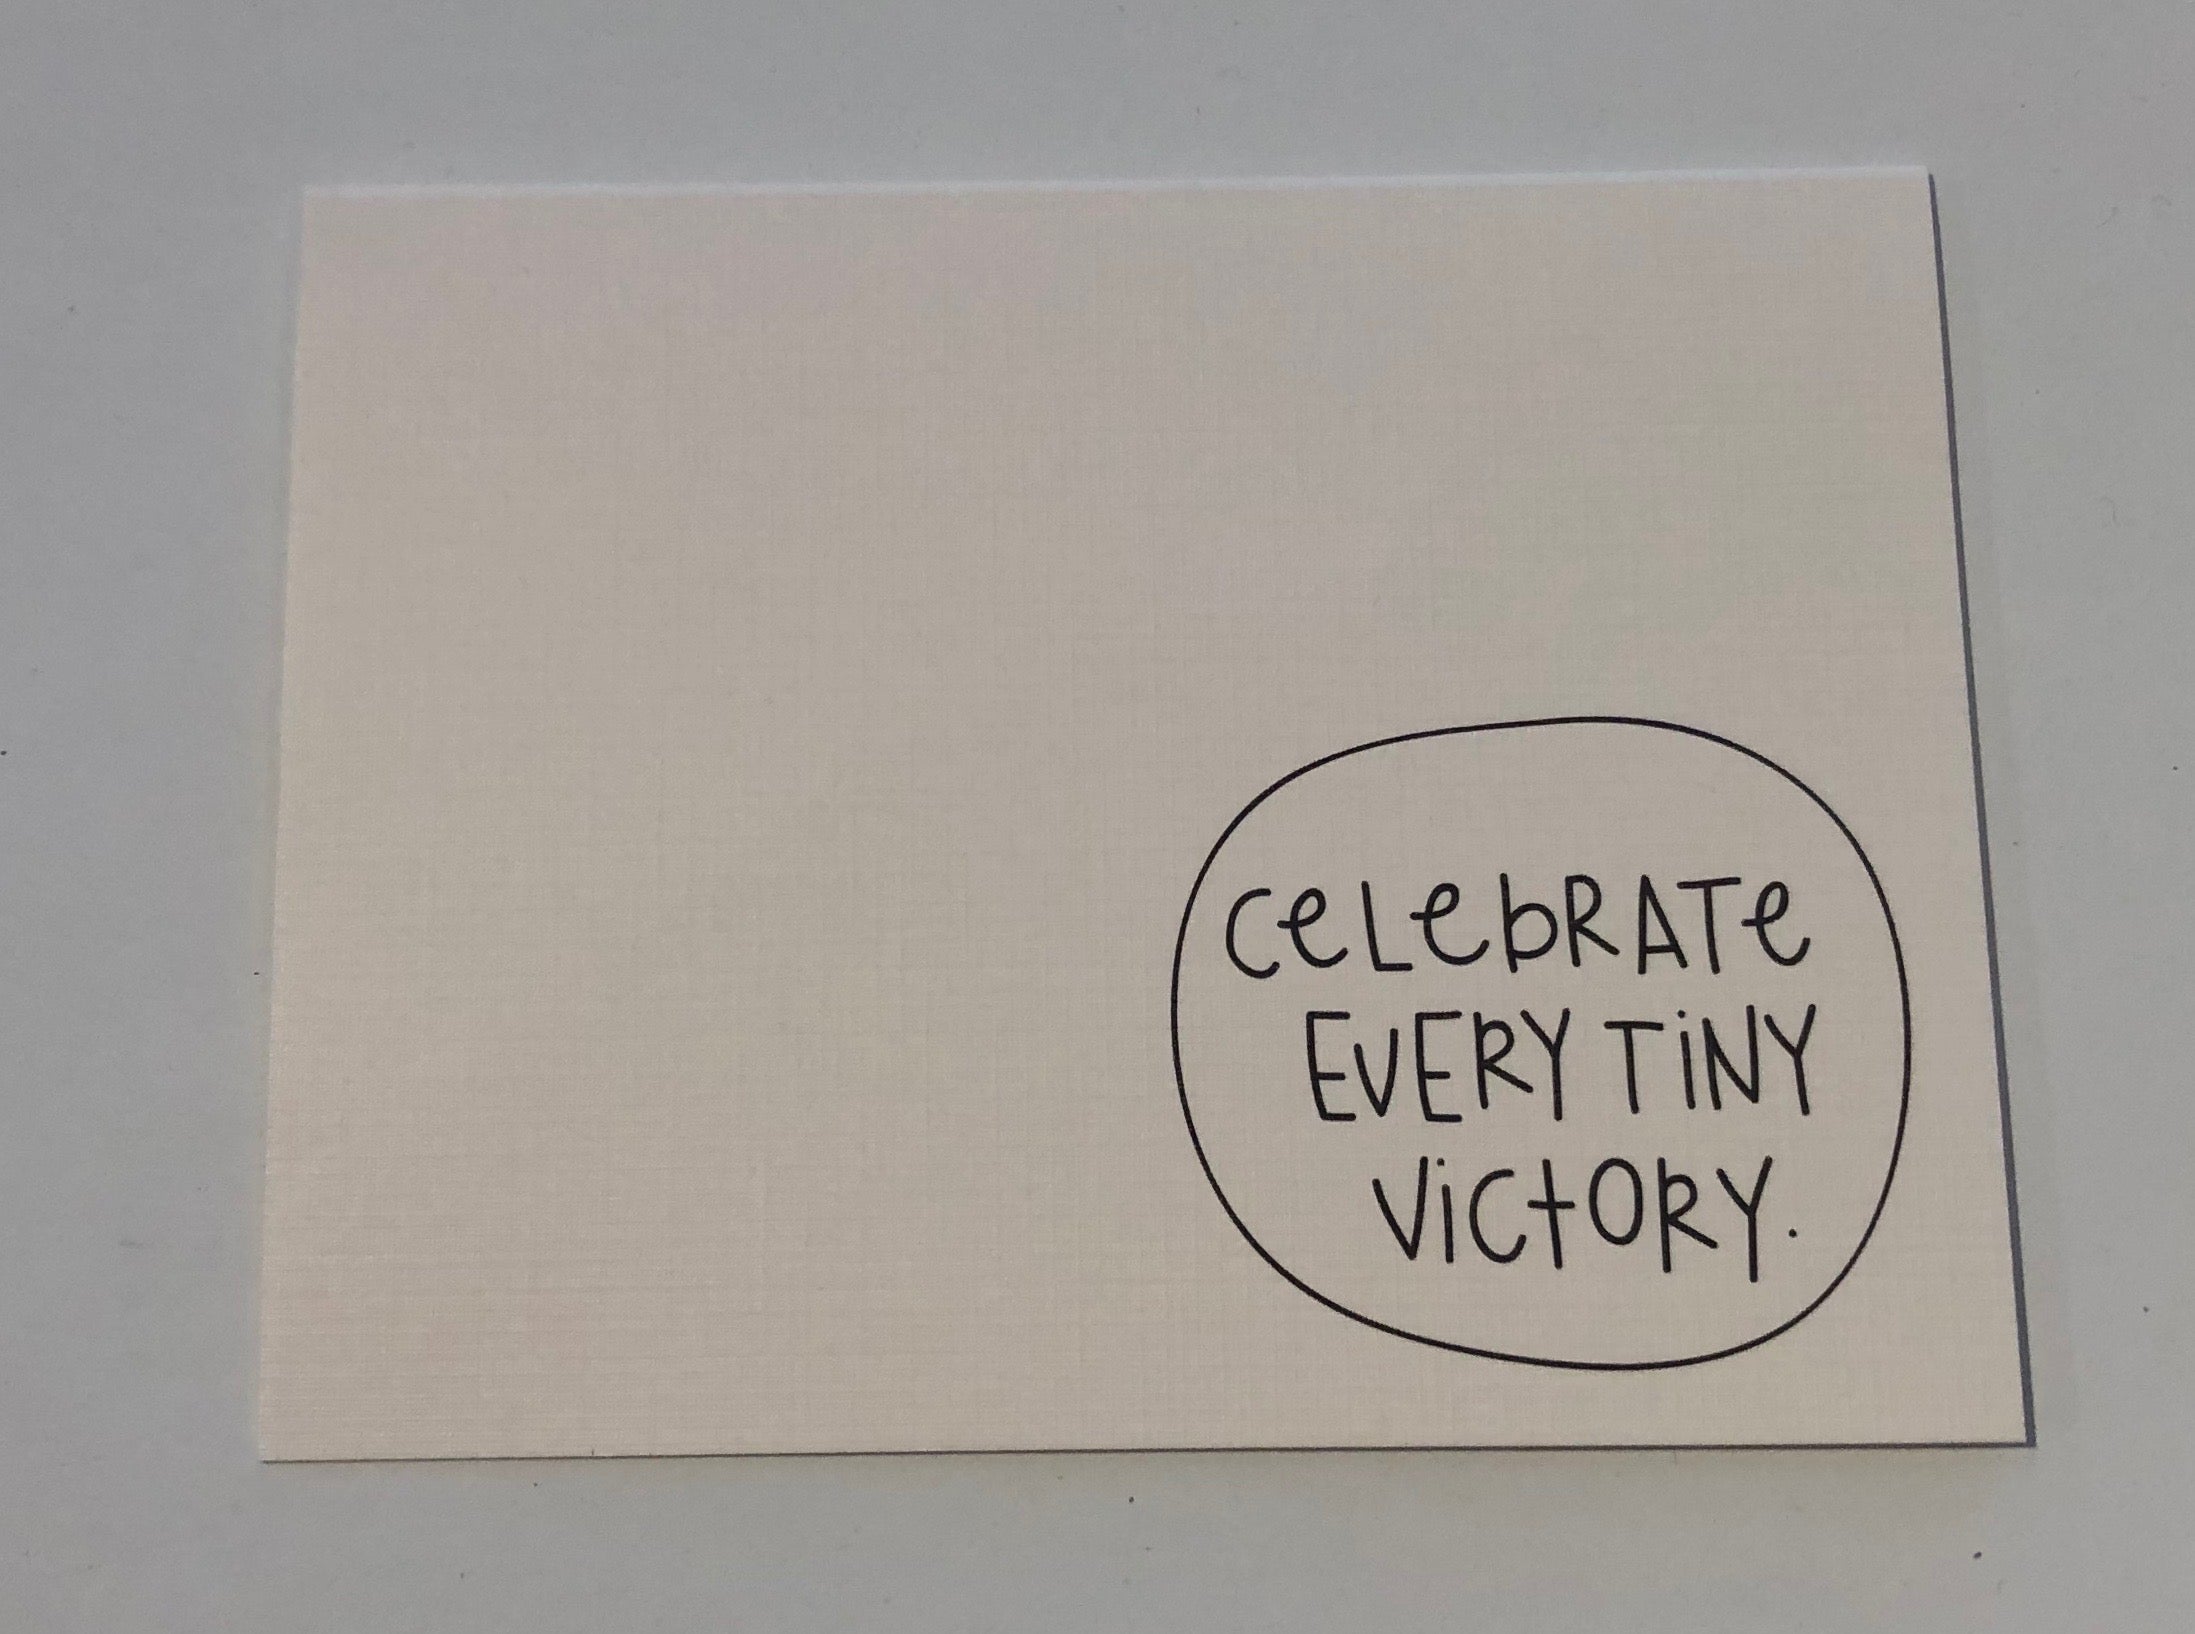 Celebrate Every Tiny Victory